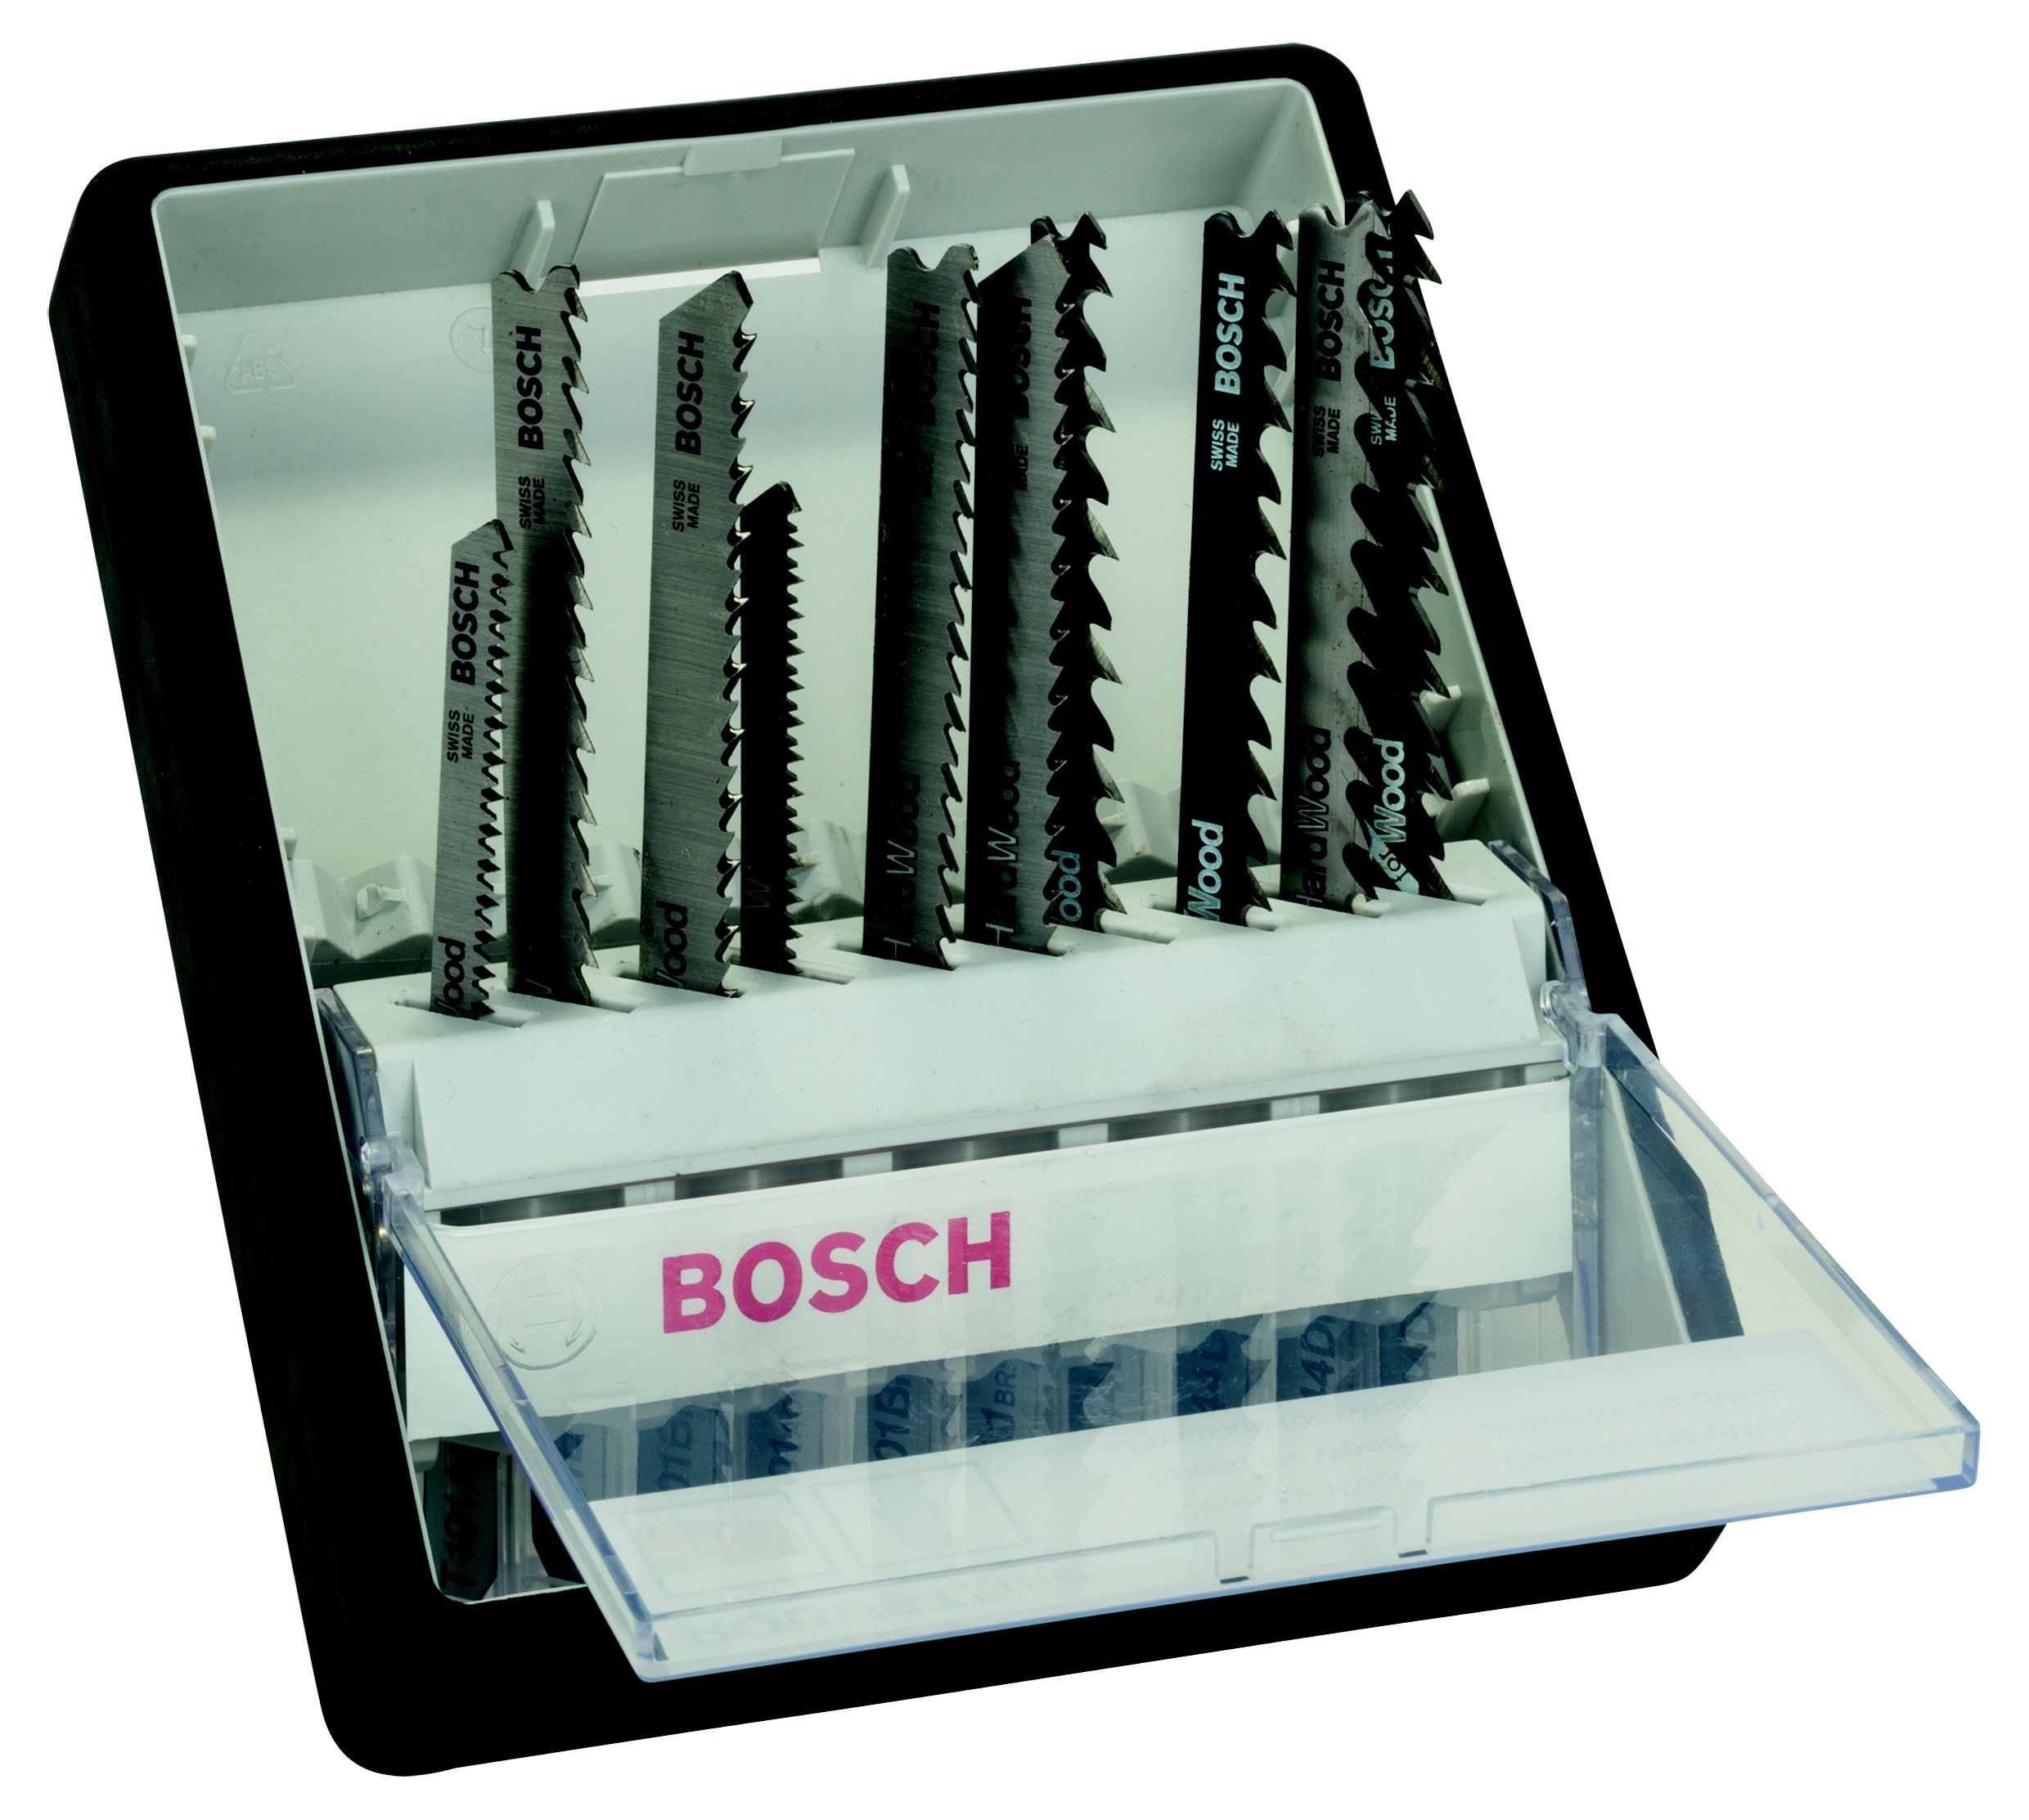 Bosch Robust Line Wood T-shank 10 piece Jigsaw blade